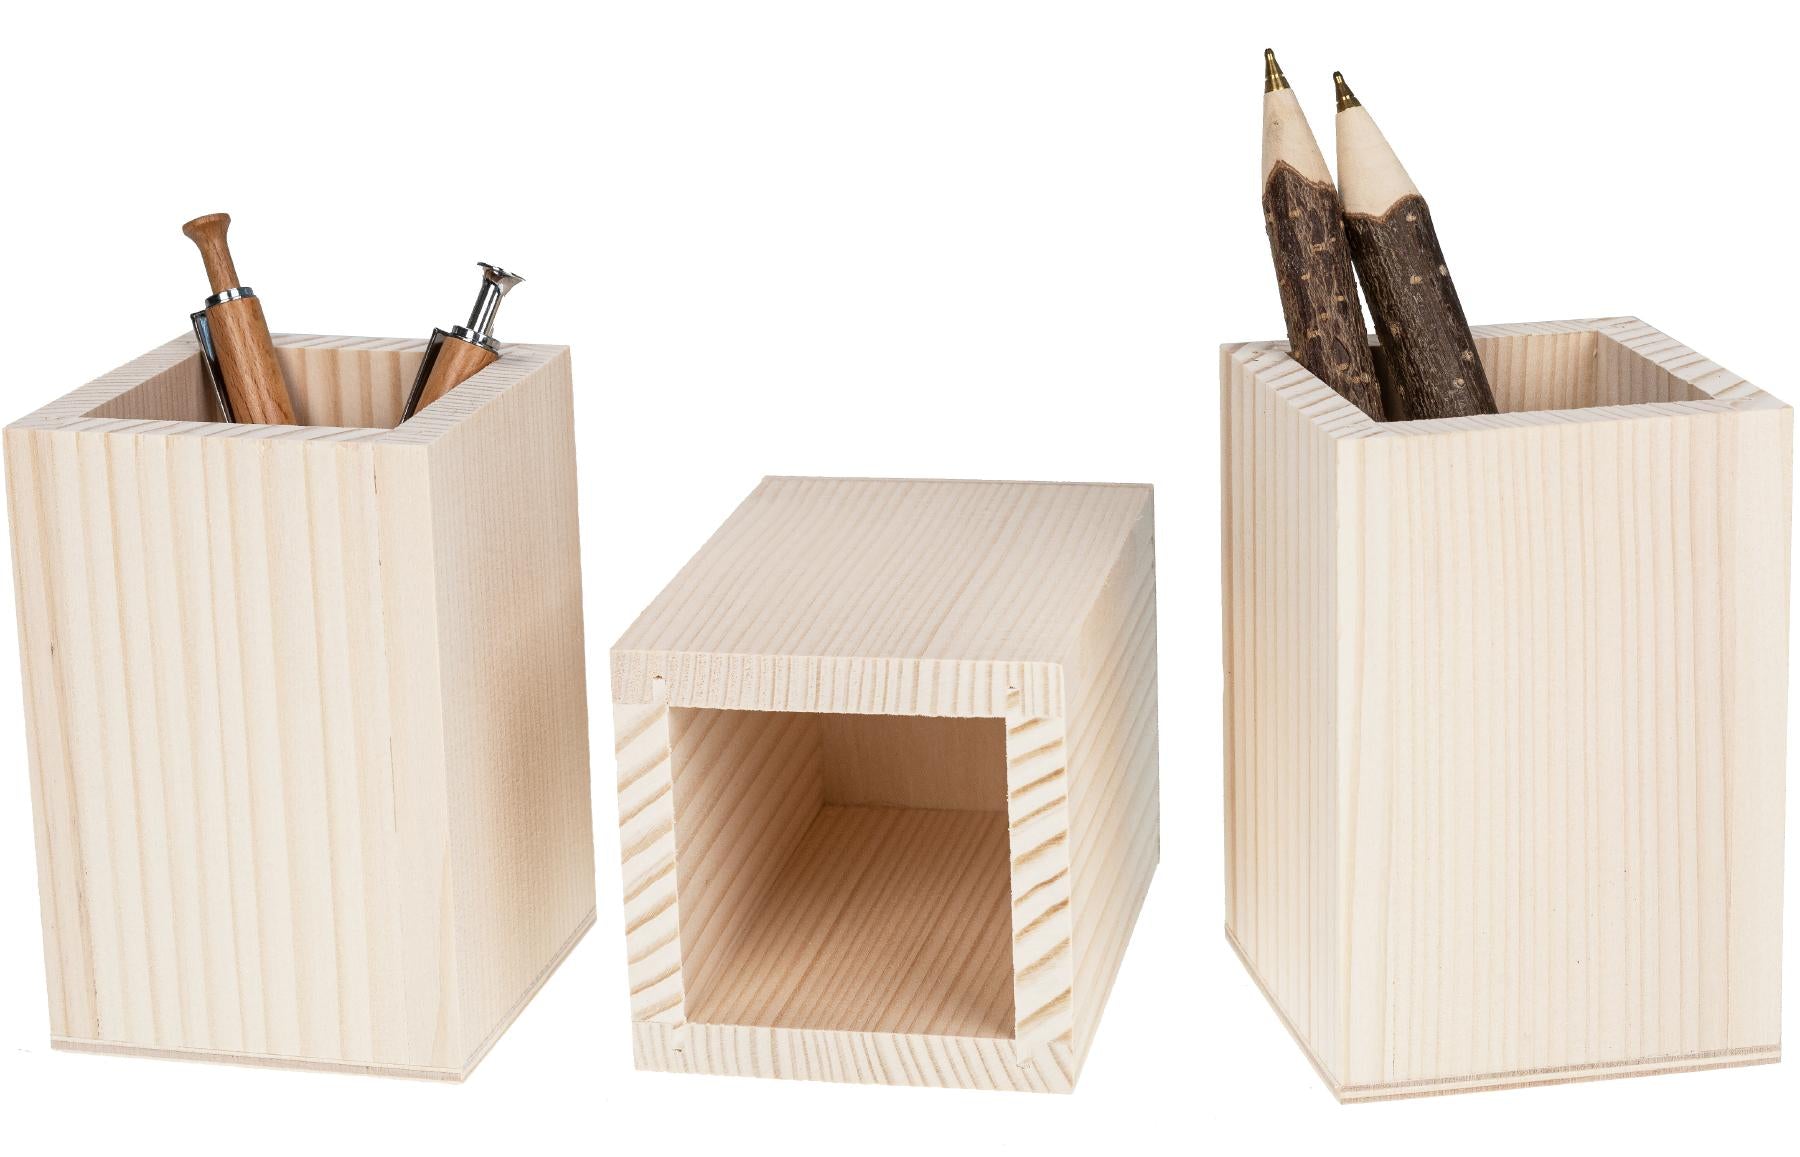 Holz Stiftebox aus Fichte - Holzbox für Ihre Schreibutensilien 11 x 7,5 x 7,5 cm